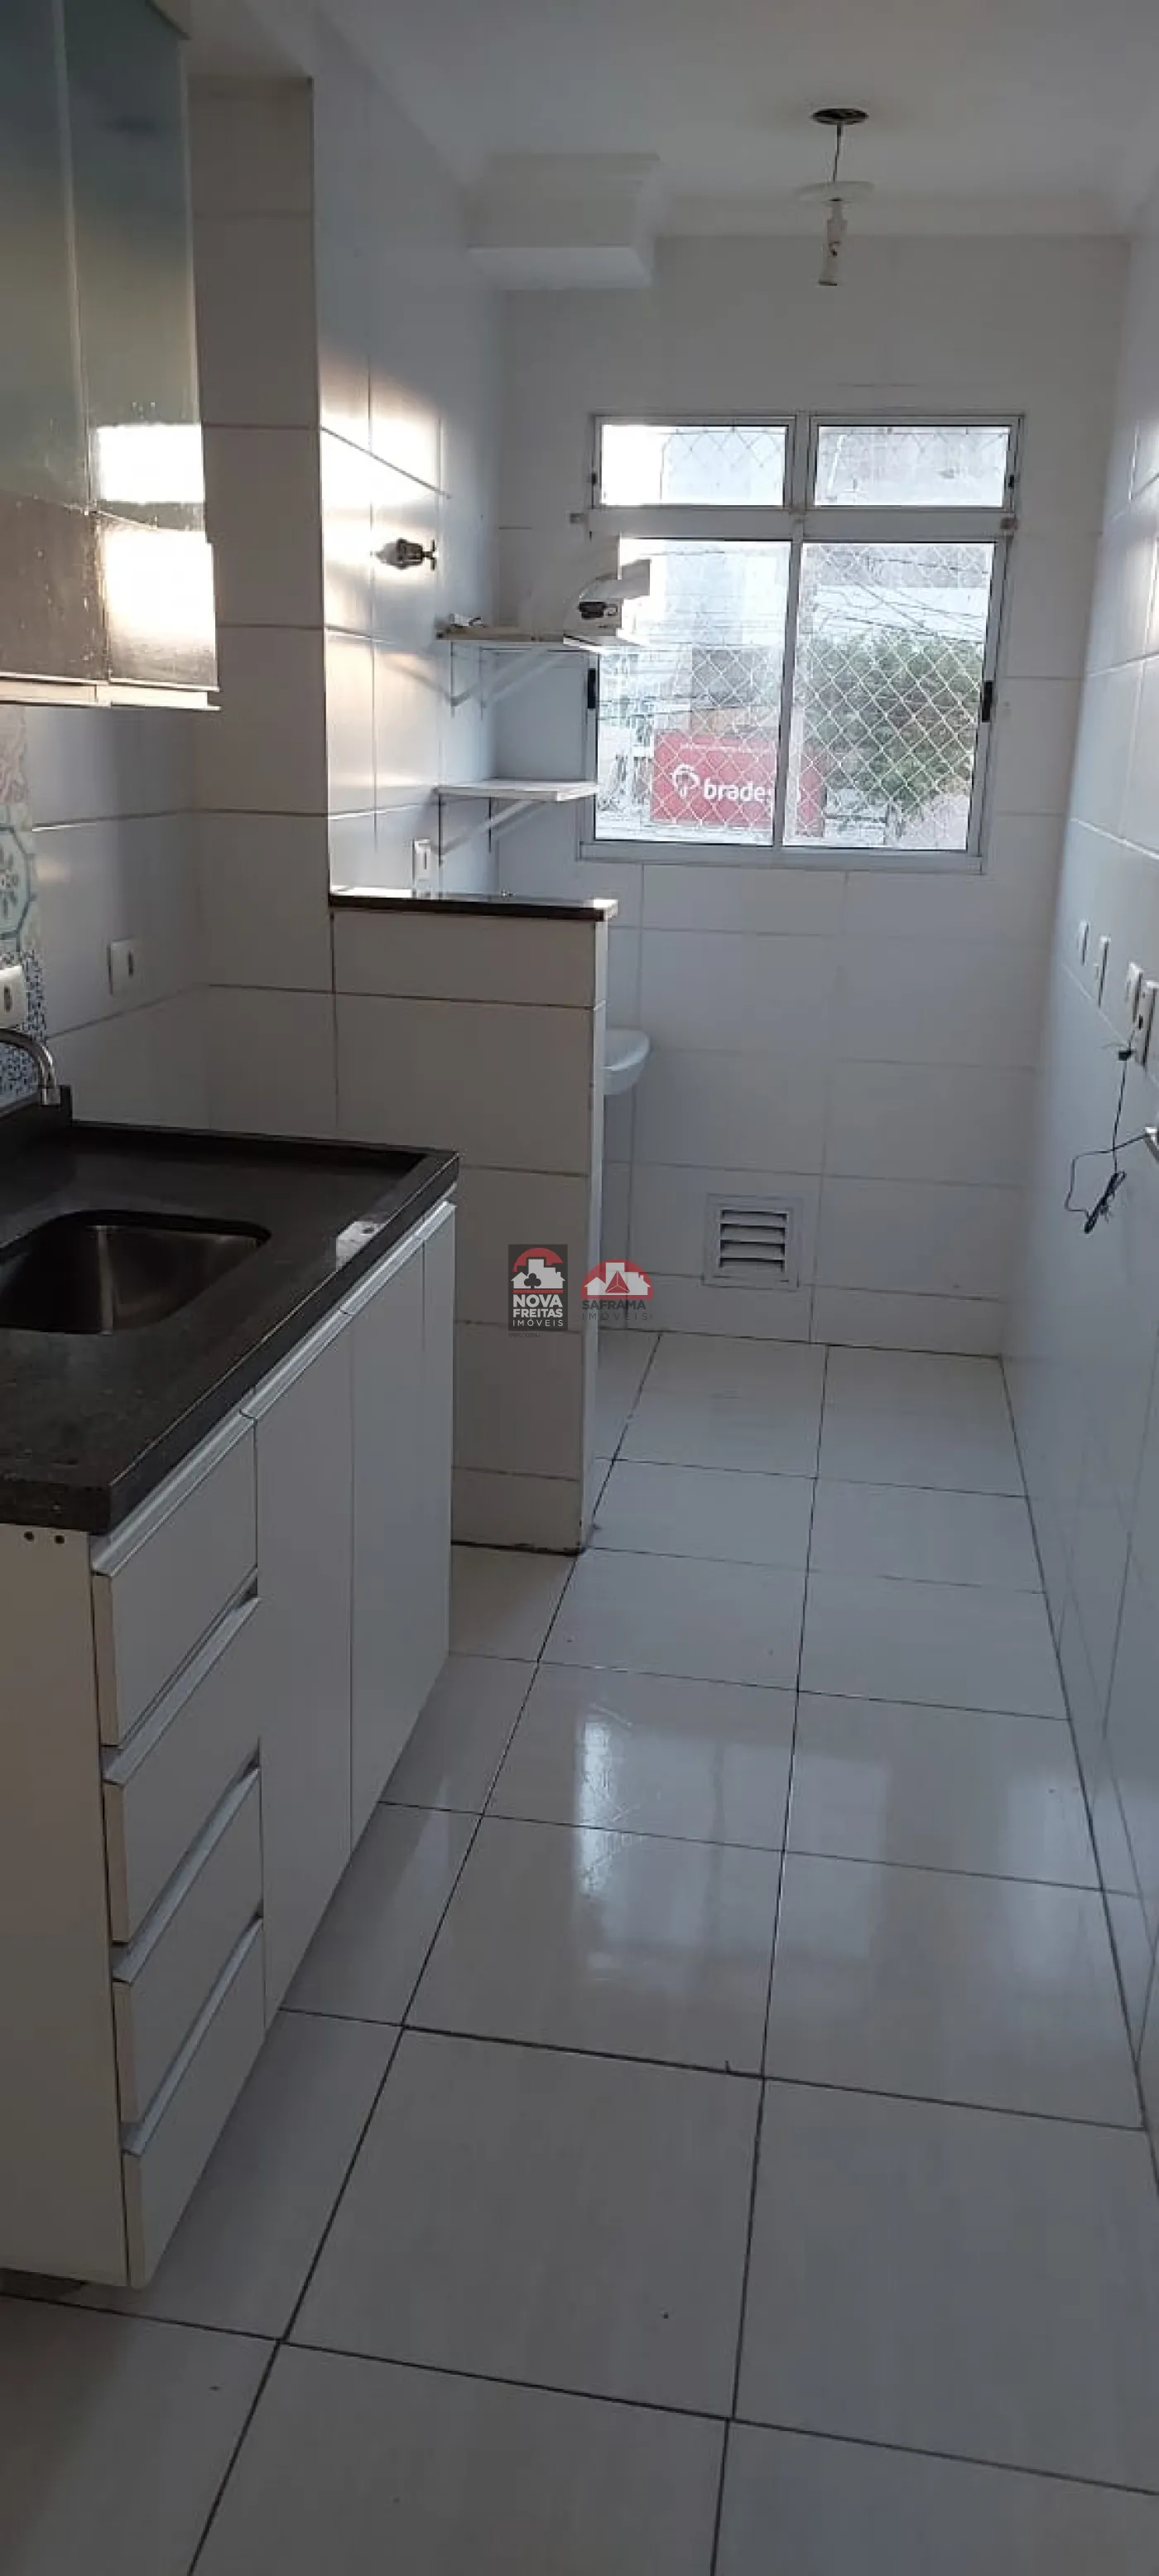 Apartamento / Padrão em Jacareí , Comprar por R$270.000,00